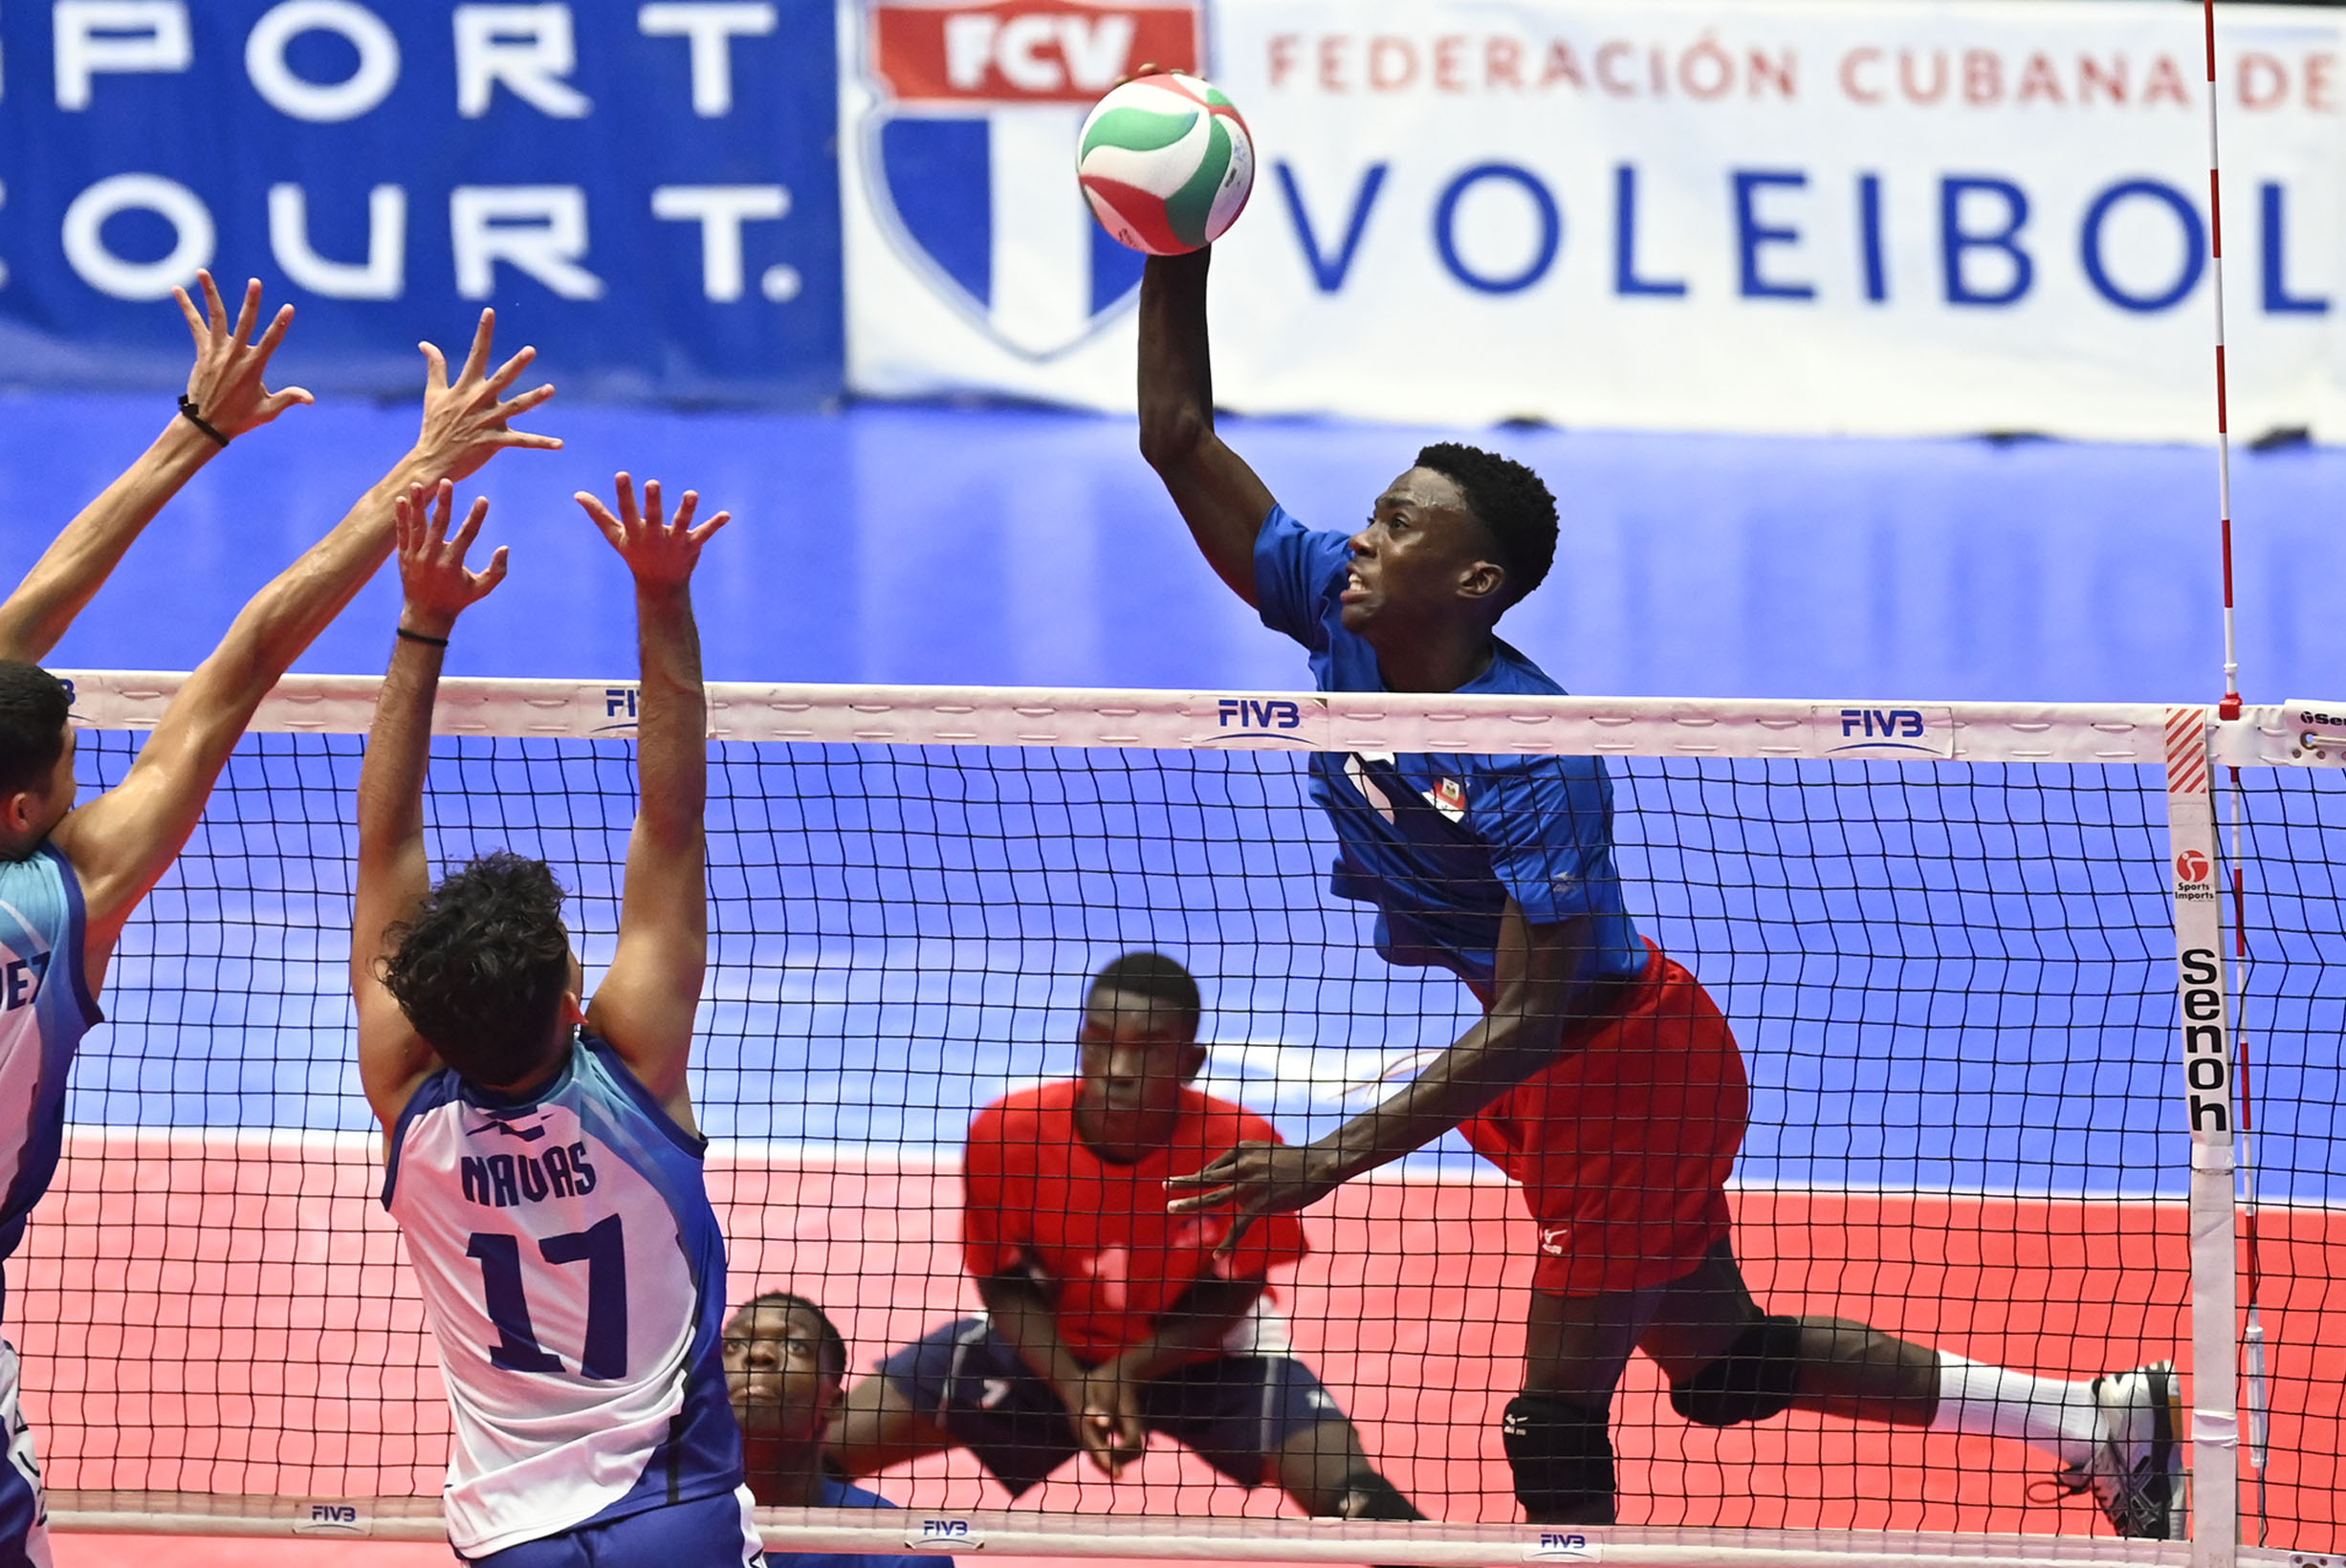 Haiti took Nicaragua by surprise at U21 Pan American Cup